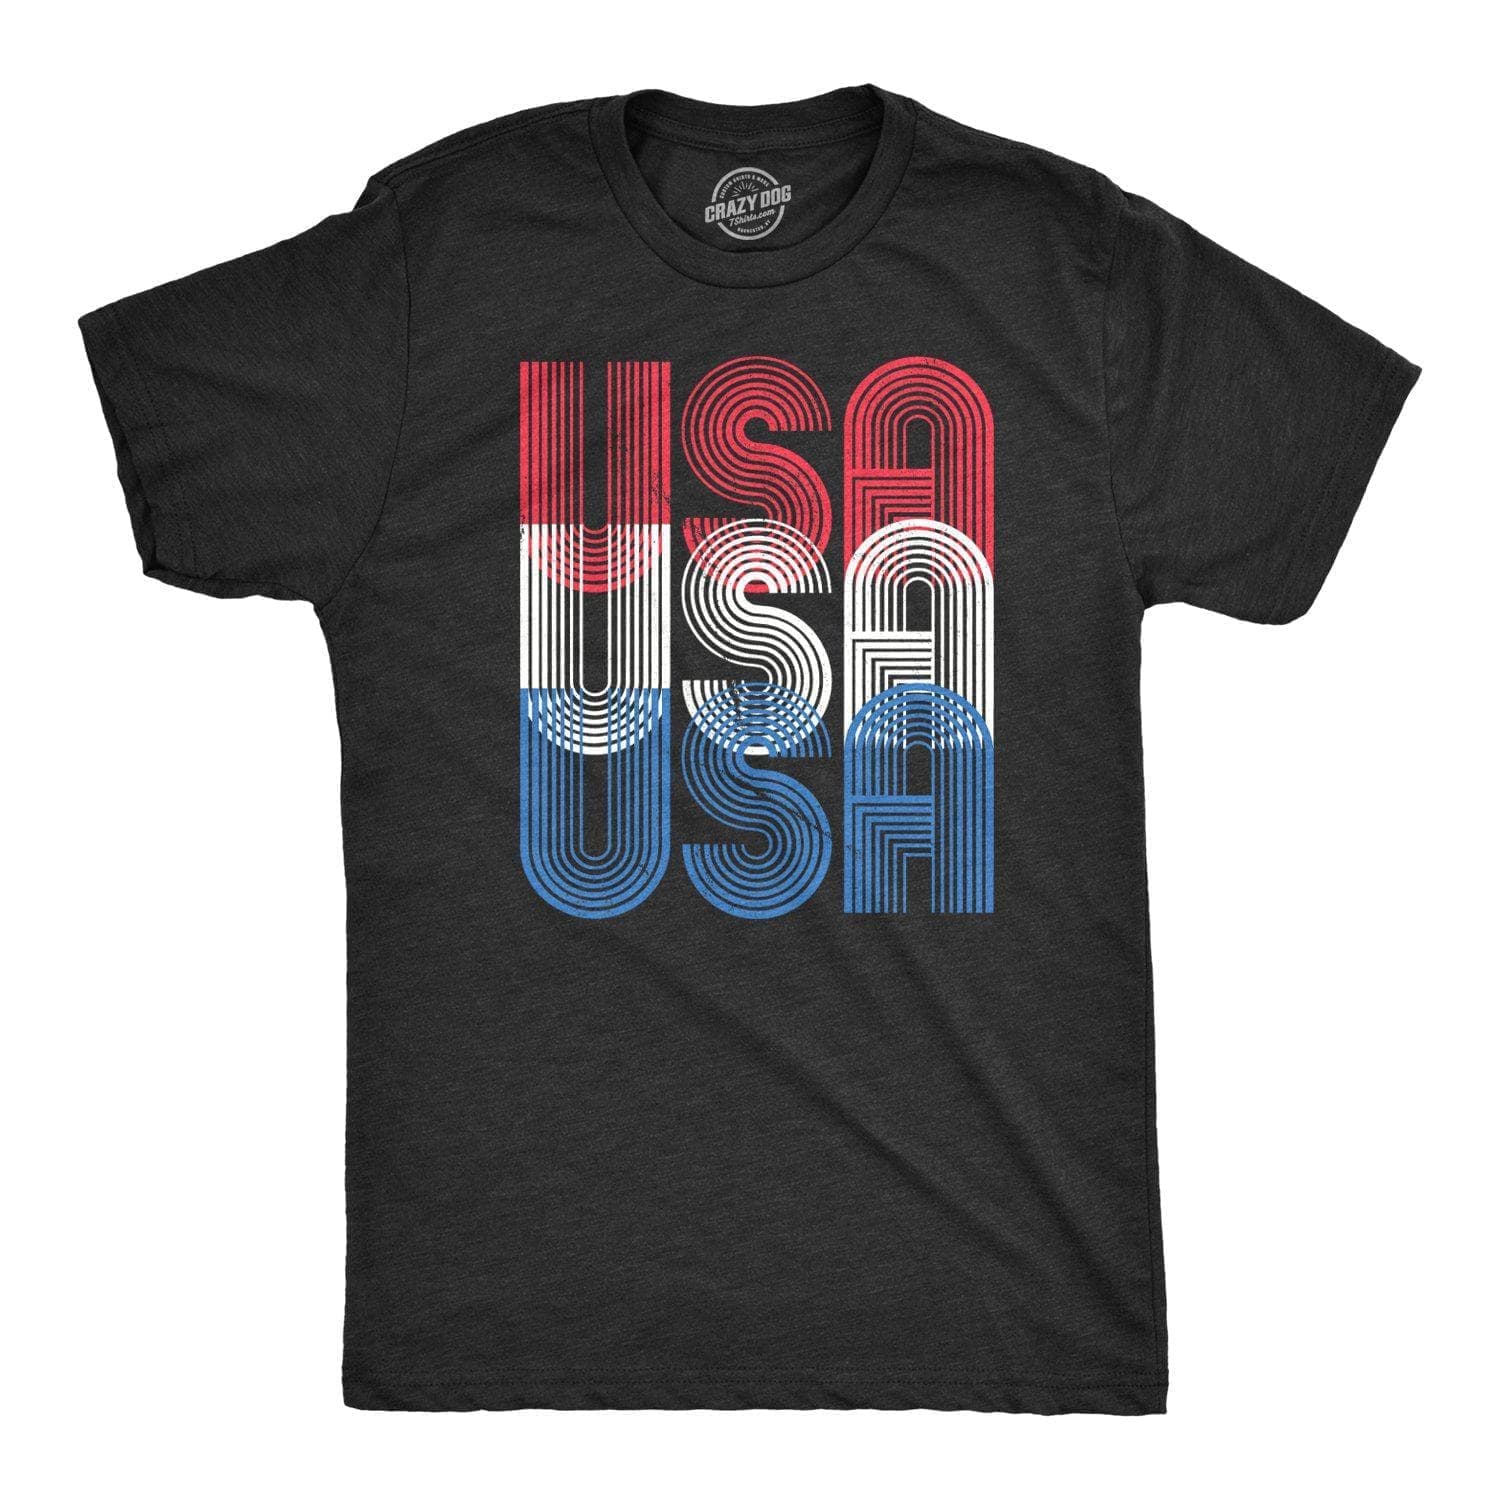 USA USA USA Men's Tshirt  -  Crazy Dog T-Shirts